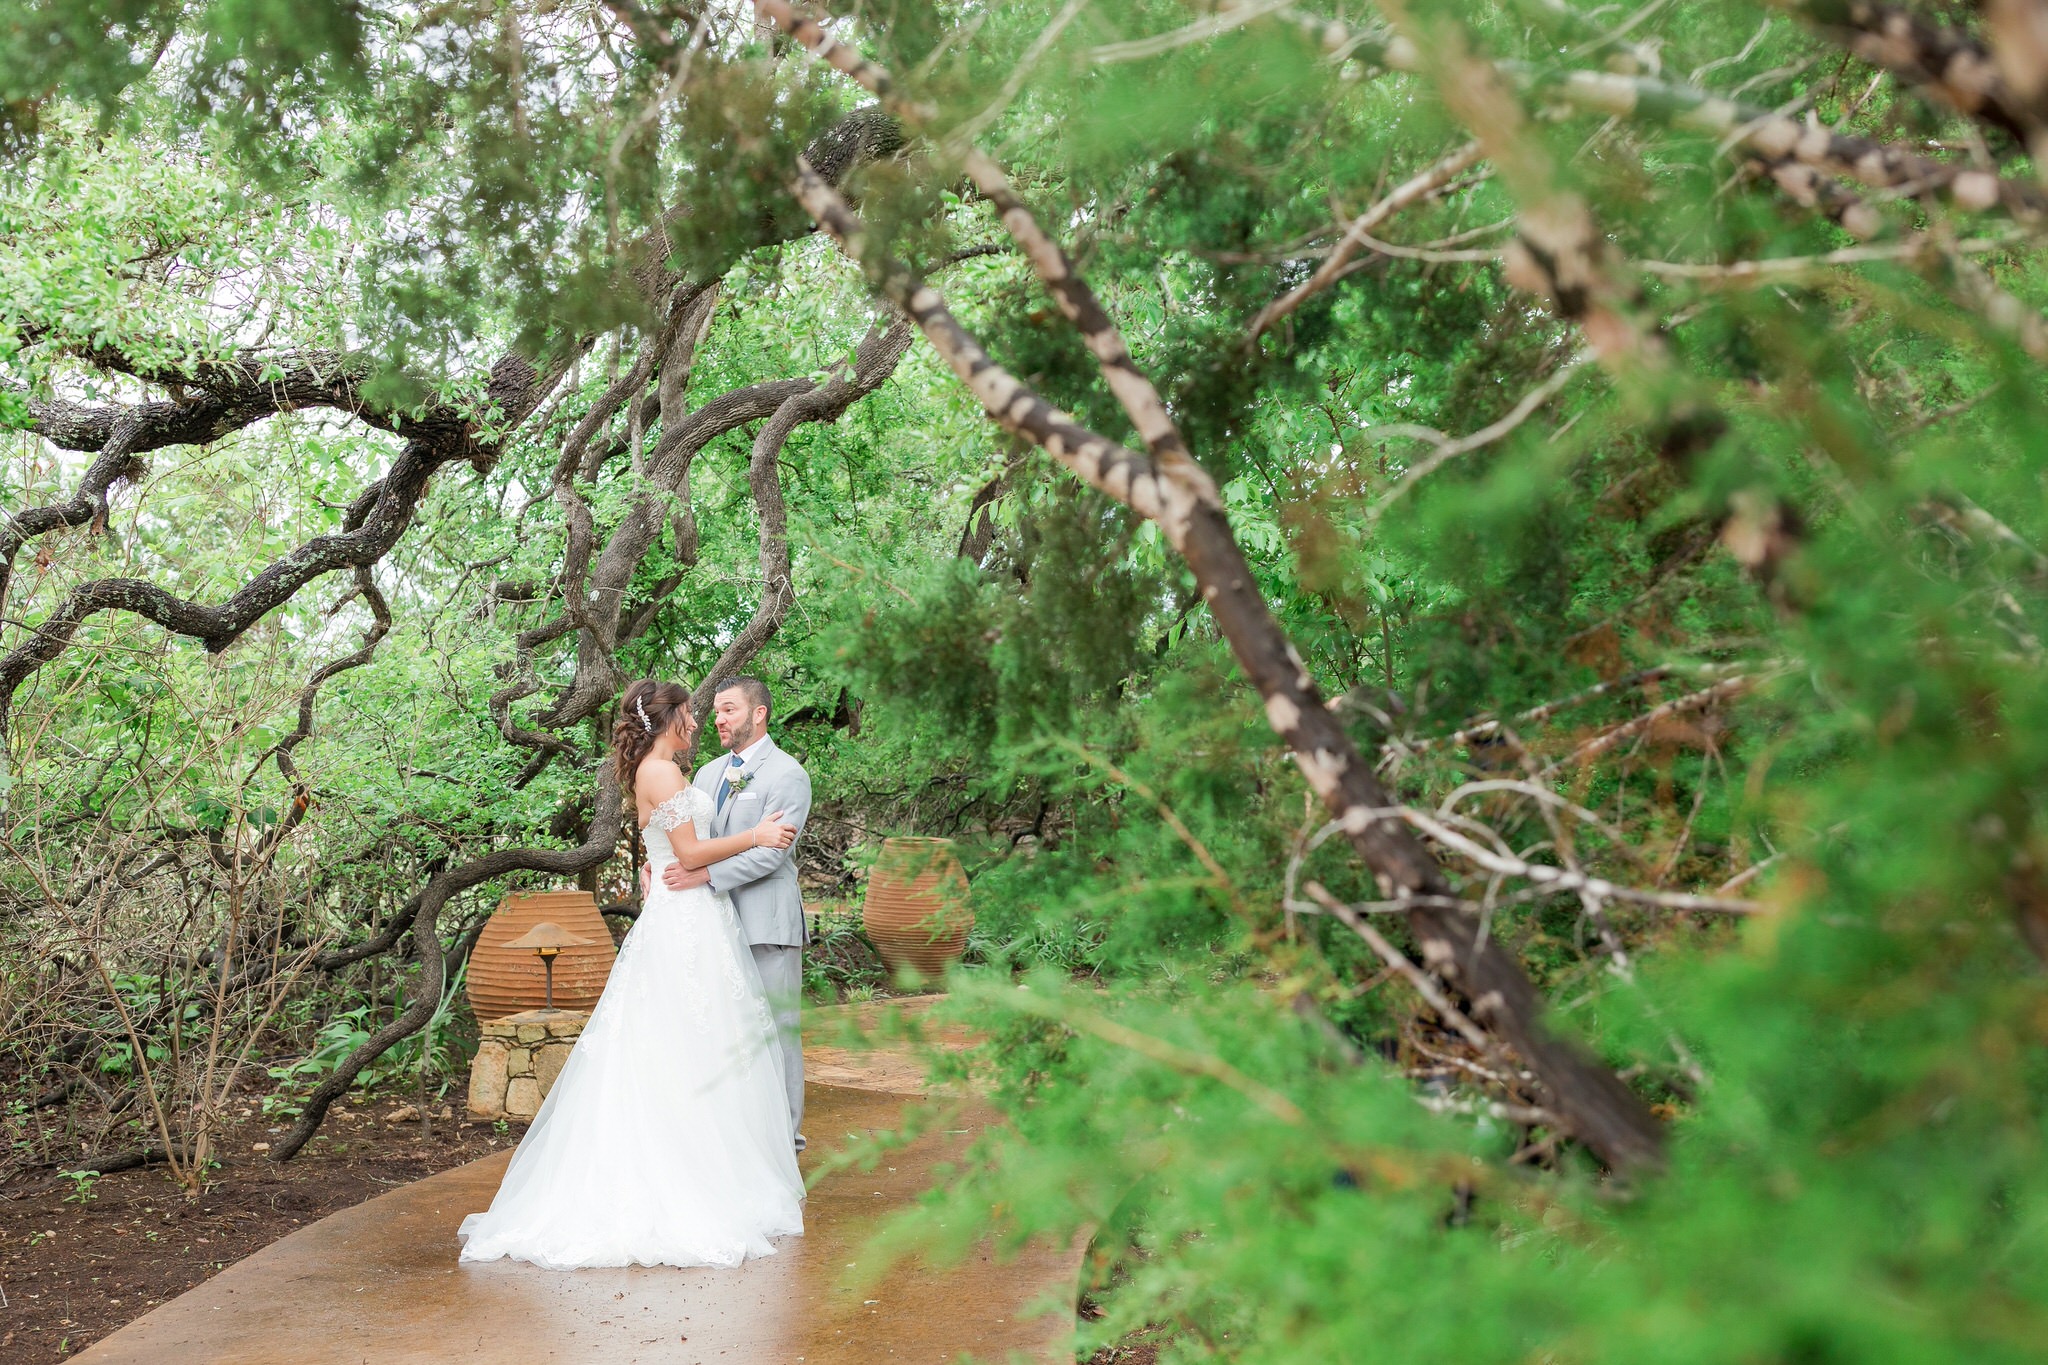 Wedding at Camp Lucy in Dripping Springs, TX by Dawn Elizabeth Studios, San Antonio Wedding Photographer